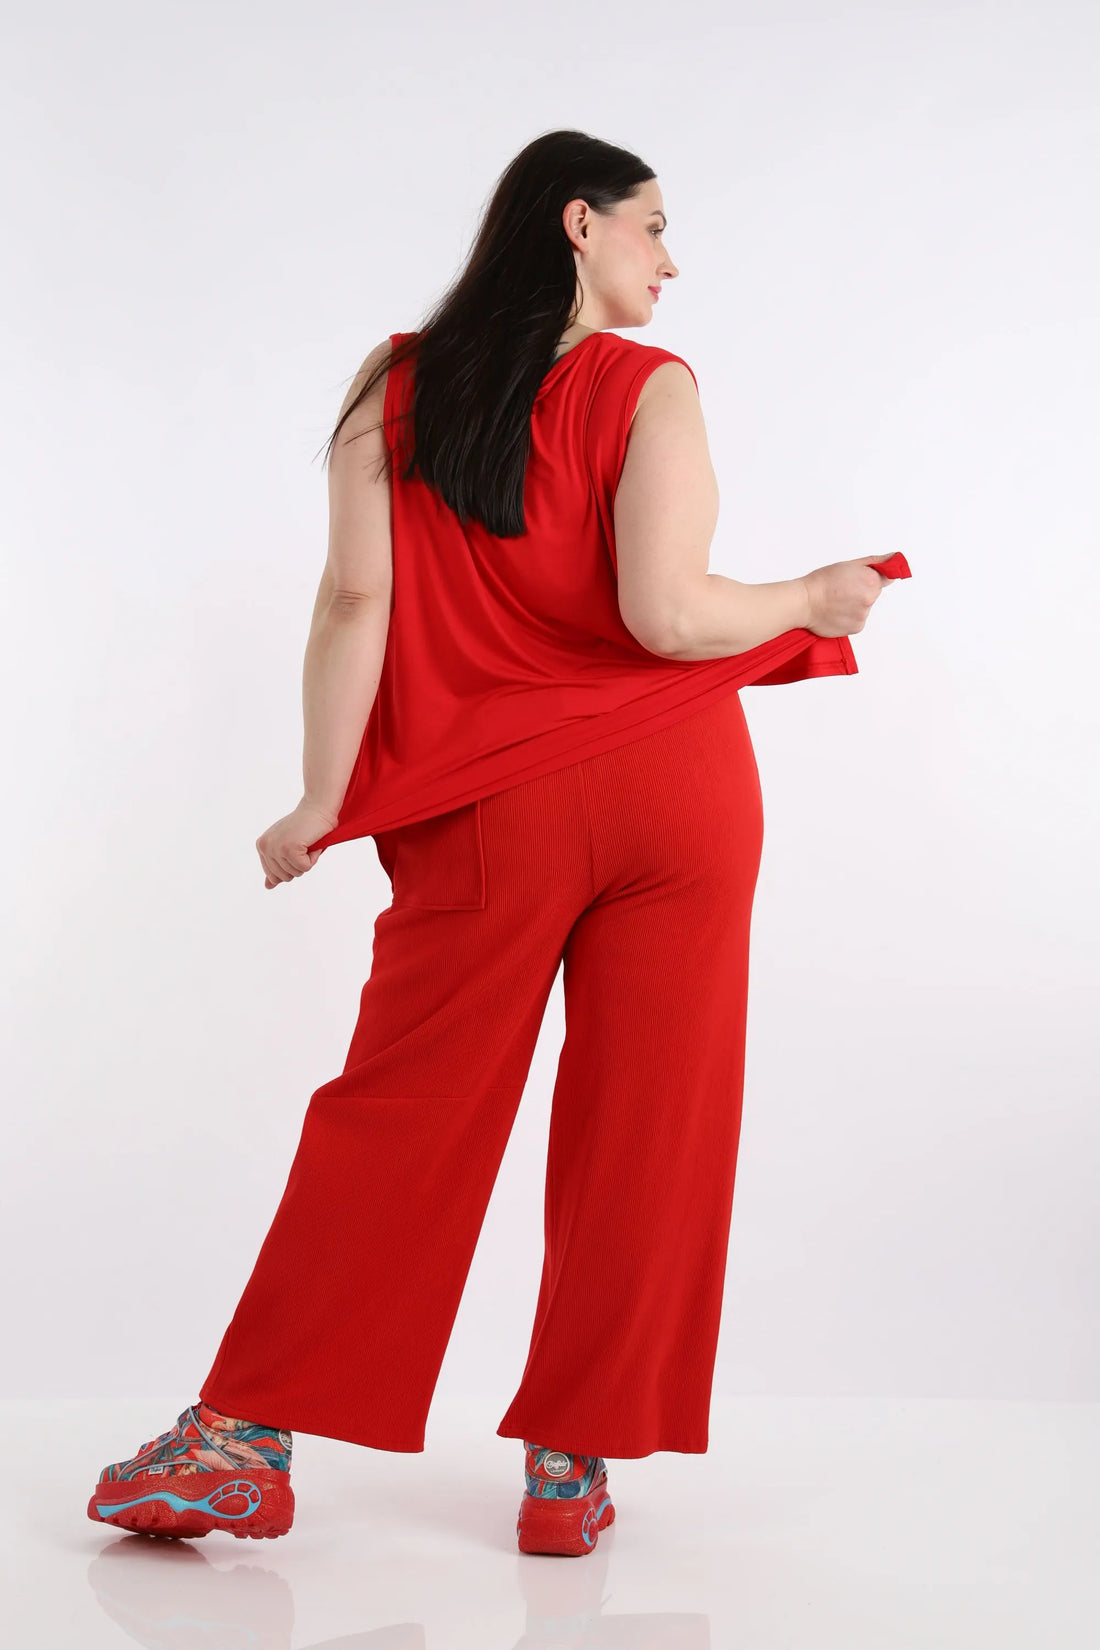 Hose von AKH Fashion aus Baumwolle in gerader Form, 1252.06907, Rot, Unifarben, Schick